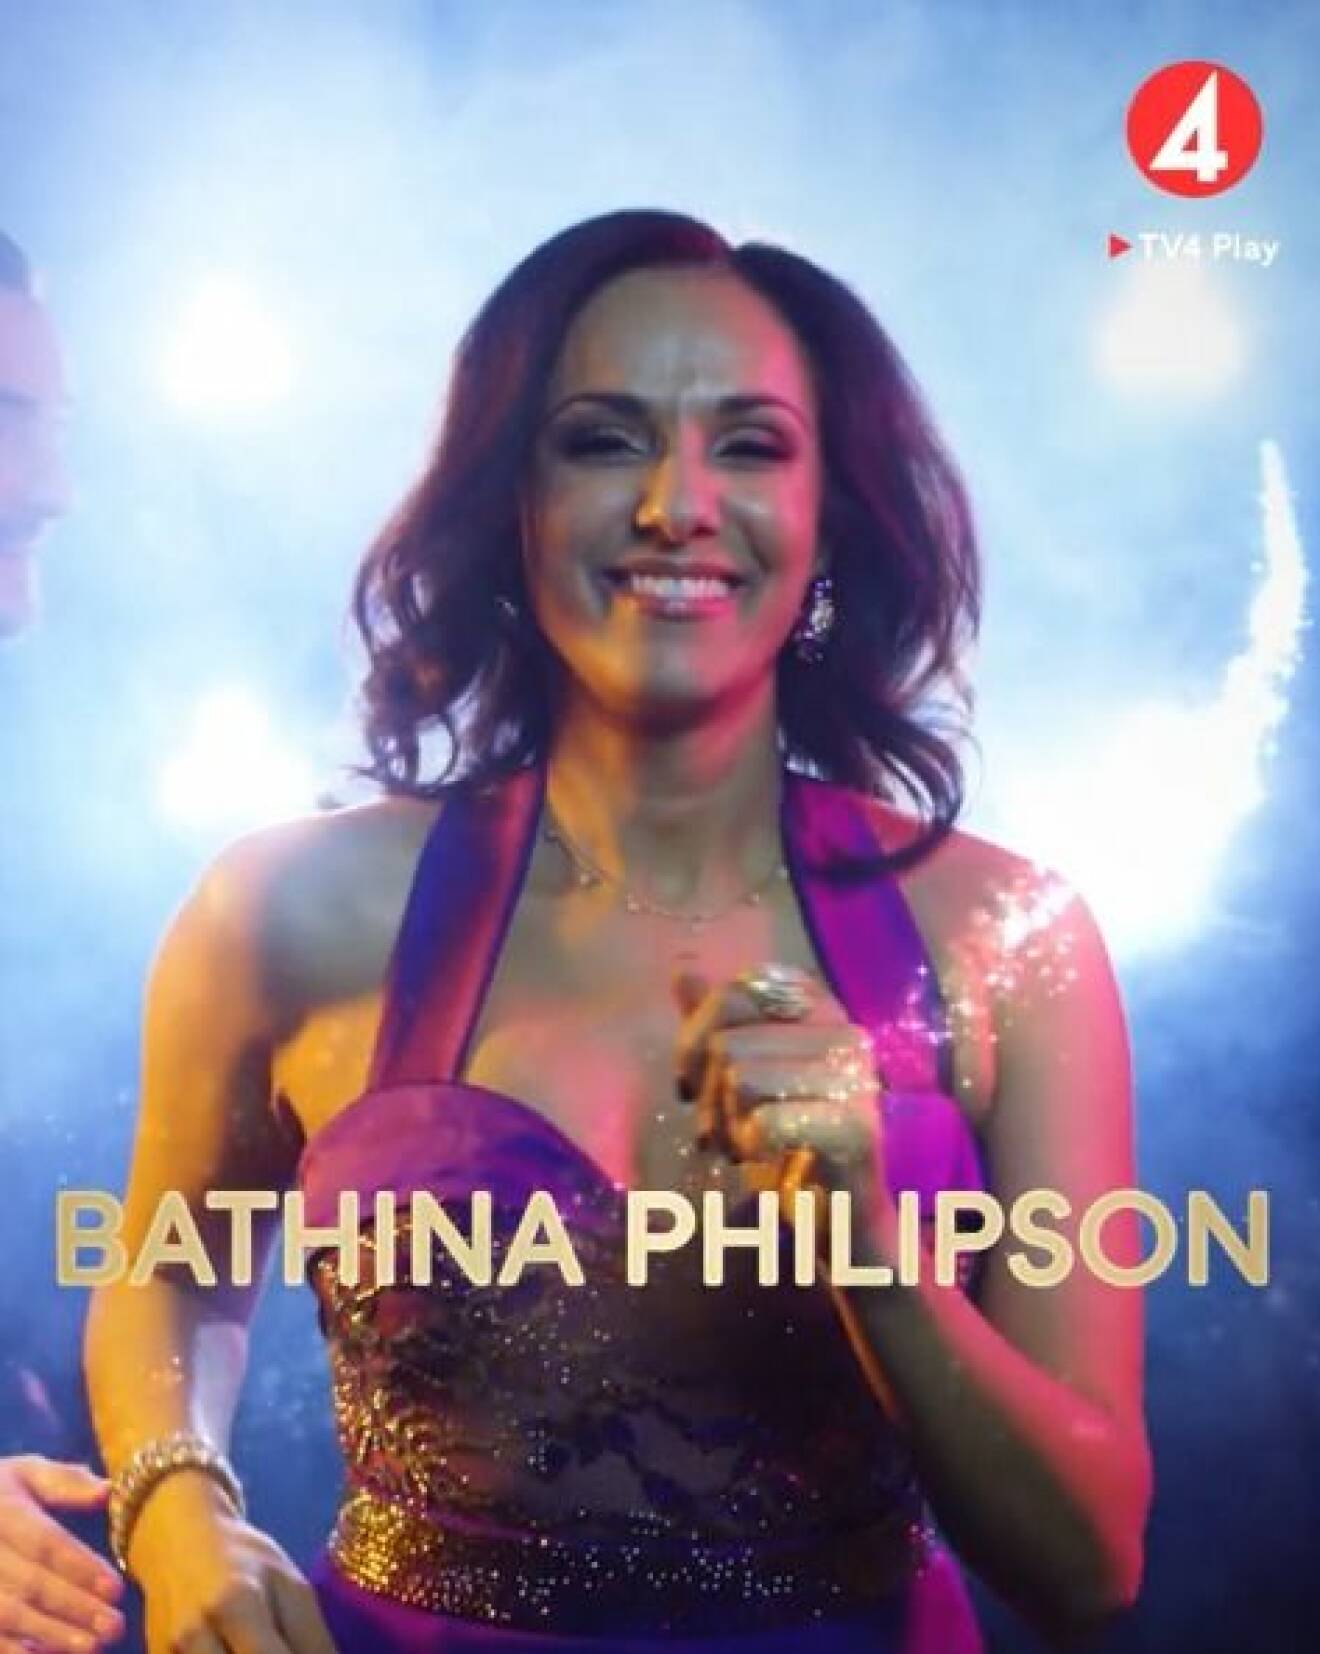 Bathina Philipson är en av deltagarna i Let's dance 2020